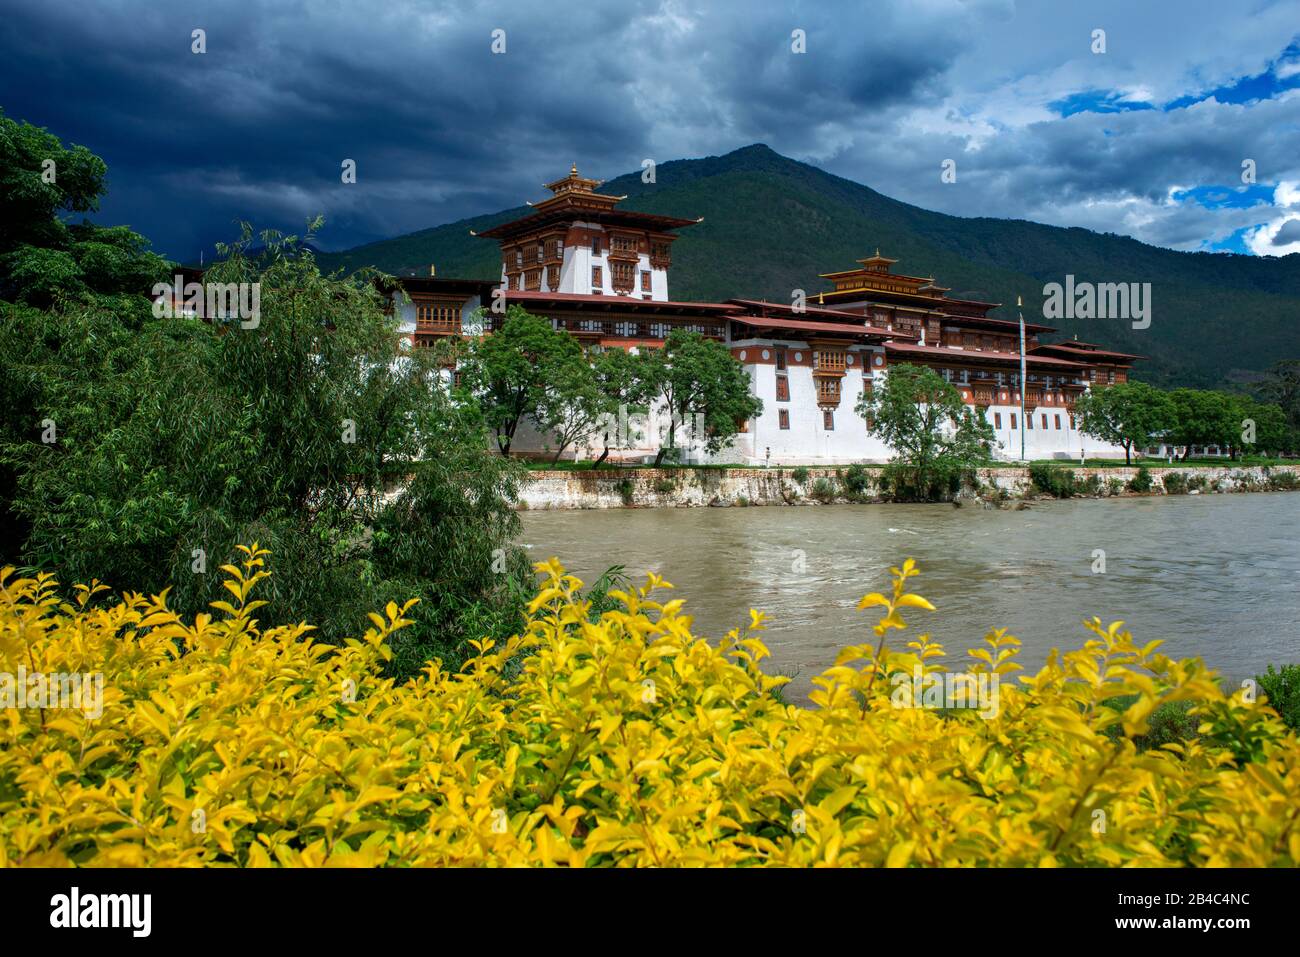 Monastère de Punakha Dzong, les montagnes de l'Himalaya du Bhoutan Construites à l'origine en 1300. Site sacré du peuple bhoutanais sur les rivières Phochu et Mochu, Blue-gree Banque D'Images